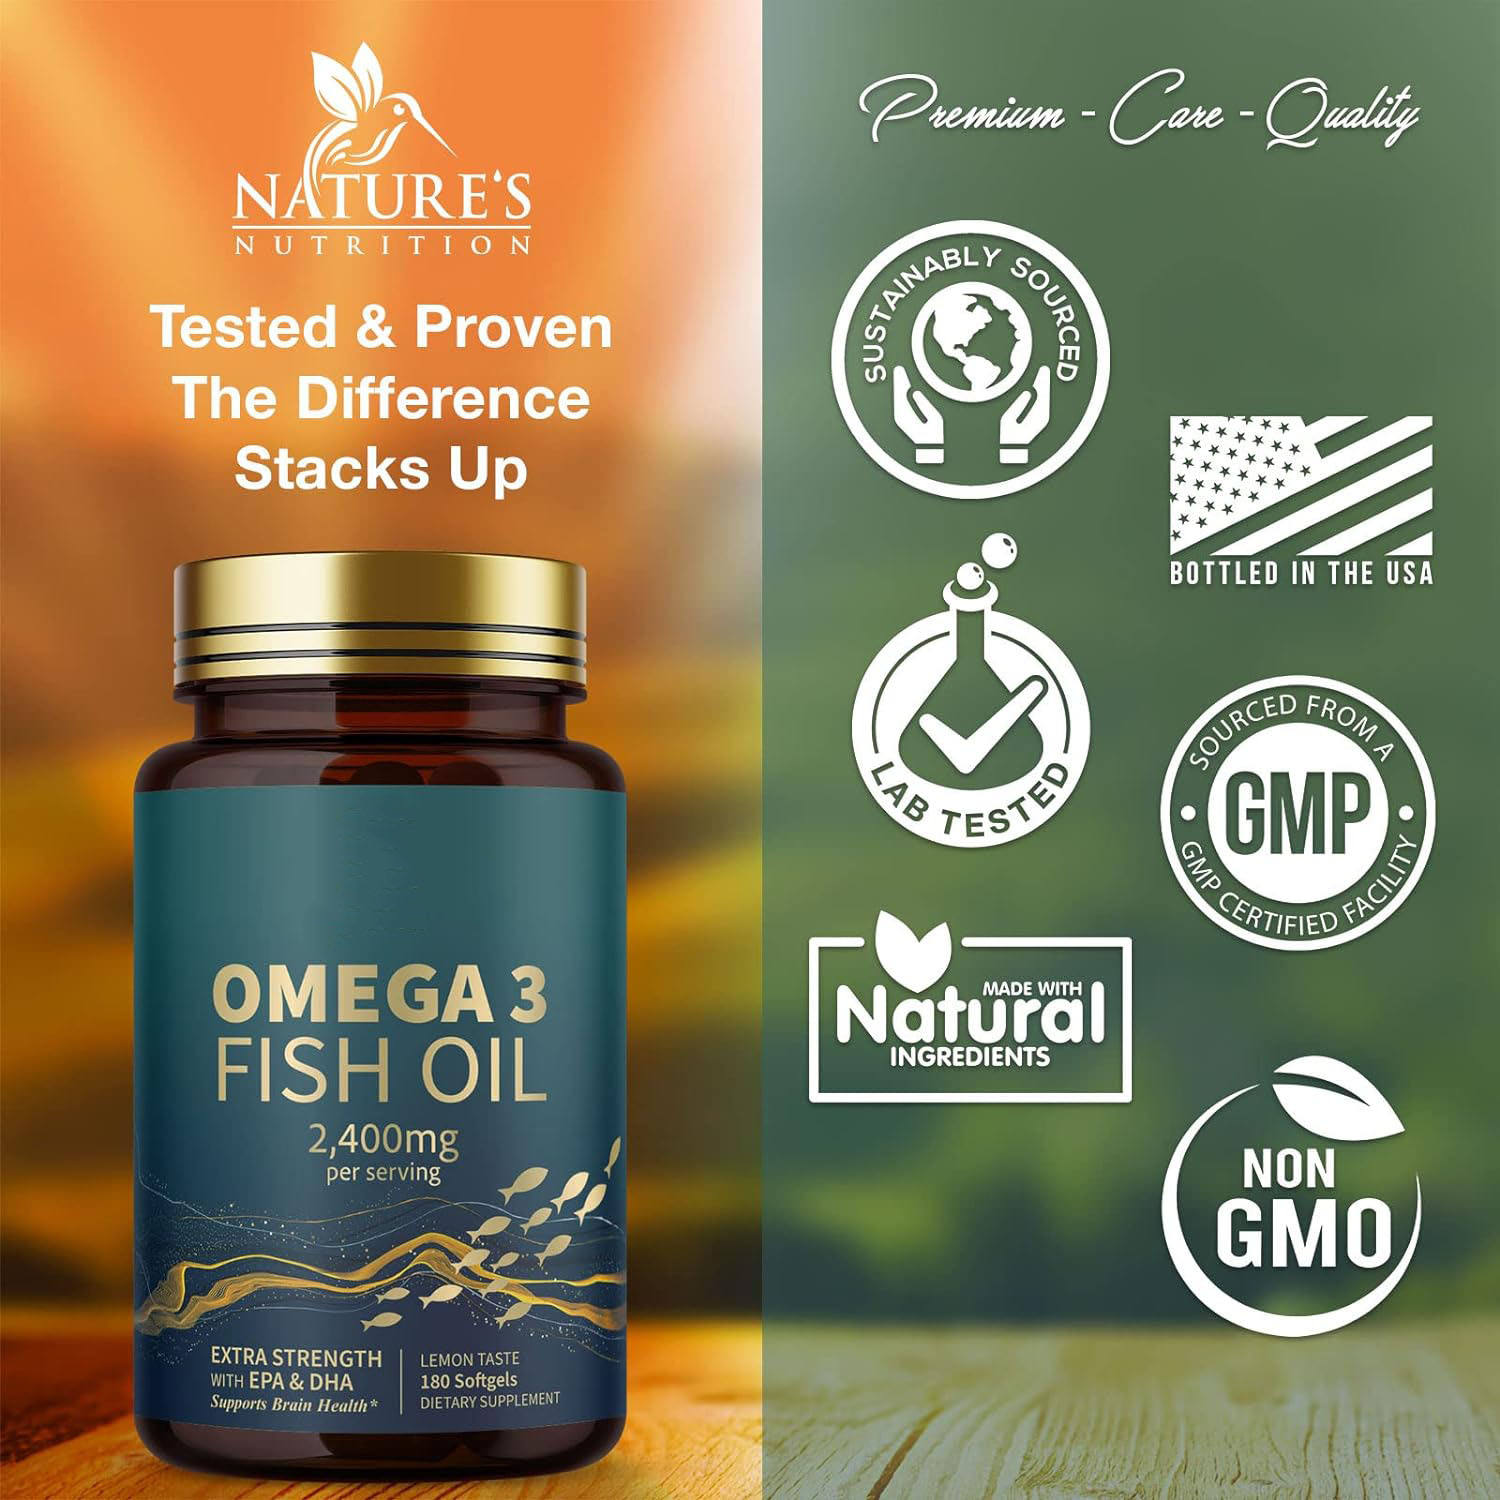 Gélules d’huile de poisson oméga-3 triple force soutient le supplément de santé du cerveau et du cœur